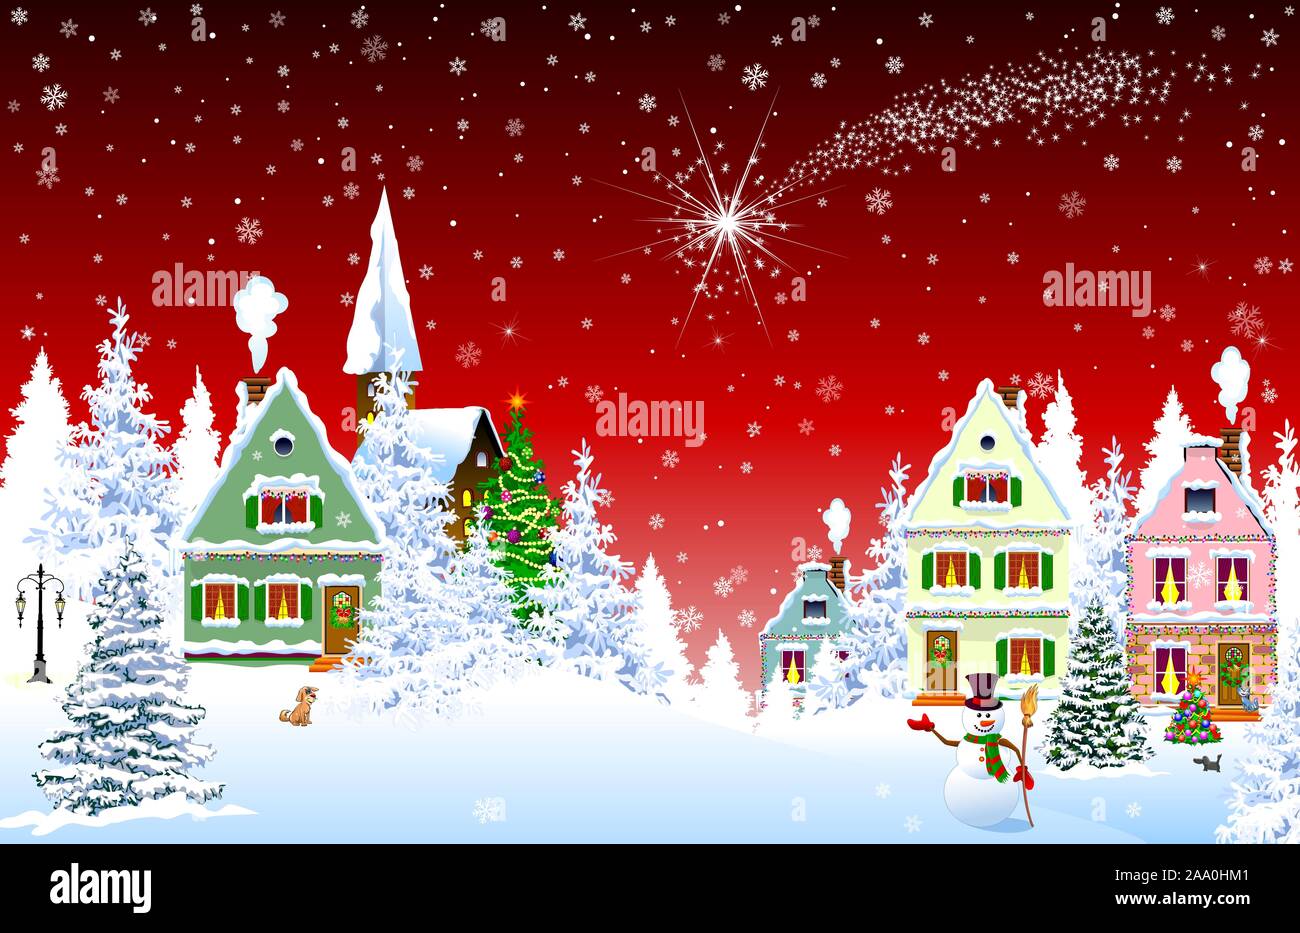 Häuser, Dorf, Kirche, Wald, Bäume. Weihnachten Stern über das Dorf. Winter Landschaft. Heiligabend in der Nacht. Schneeflocken in den Nachthimmel. Chr Stock Vektor